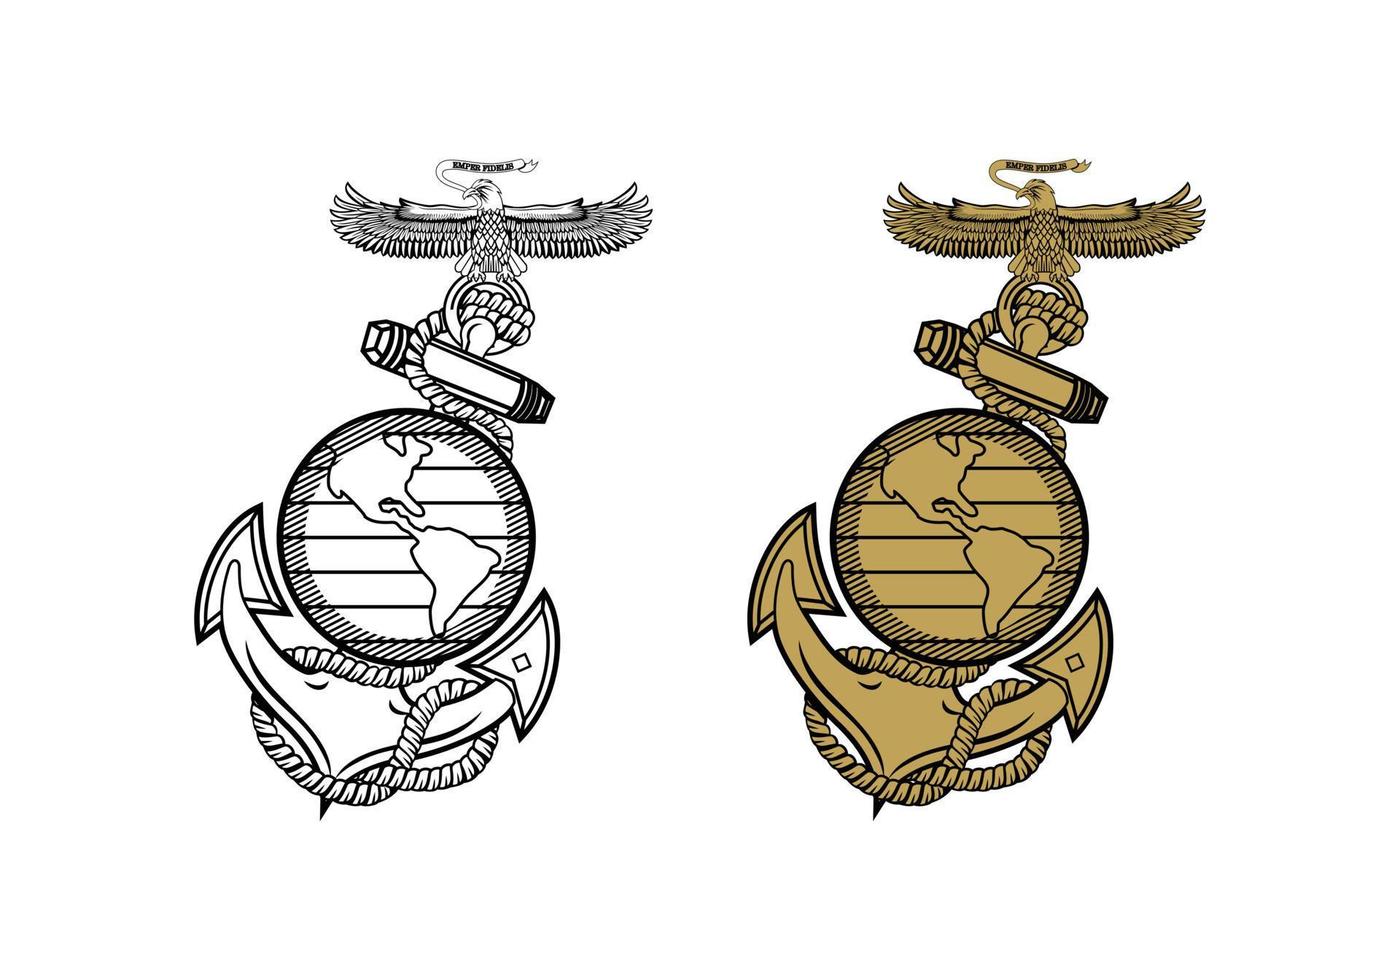 cuerpo de marines de los estados unidos águila globo y ancla ega diseño ilustración vector